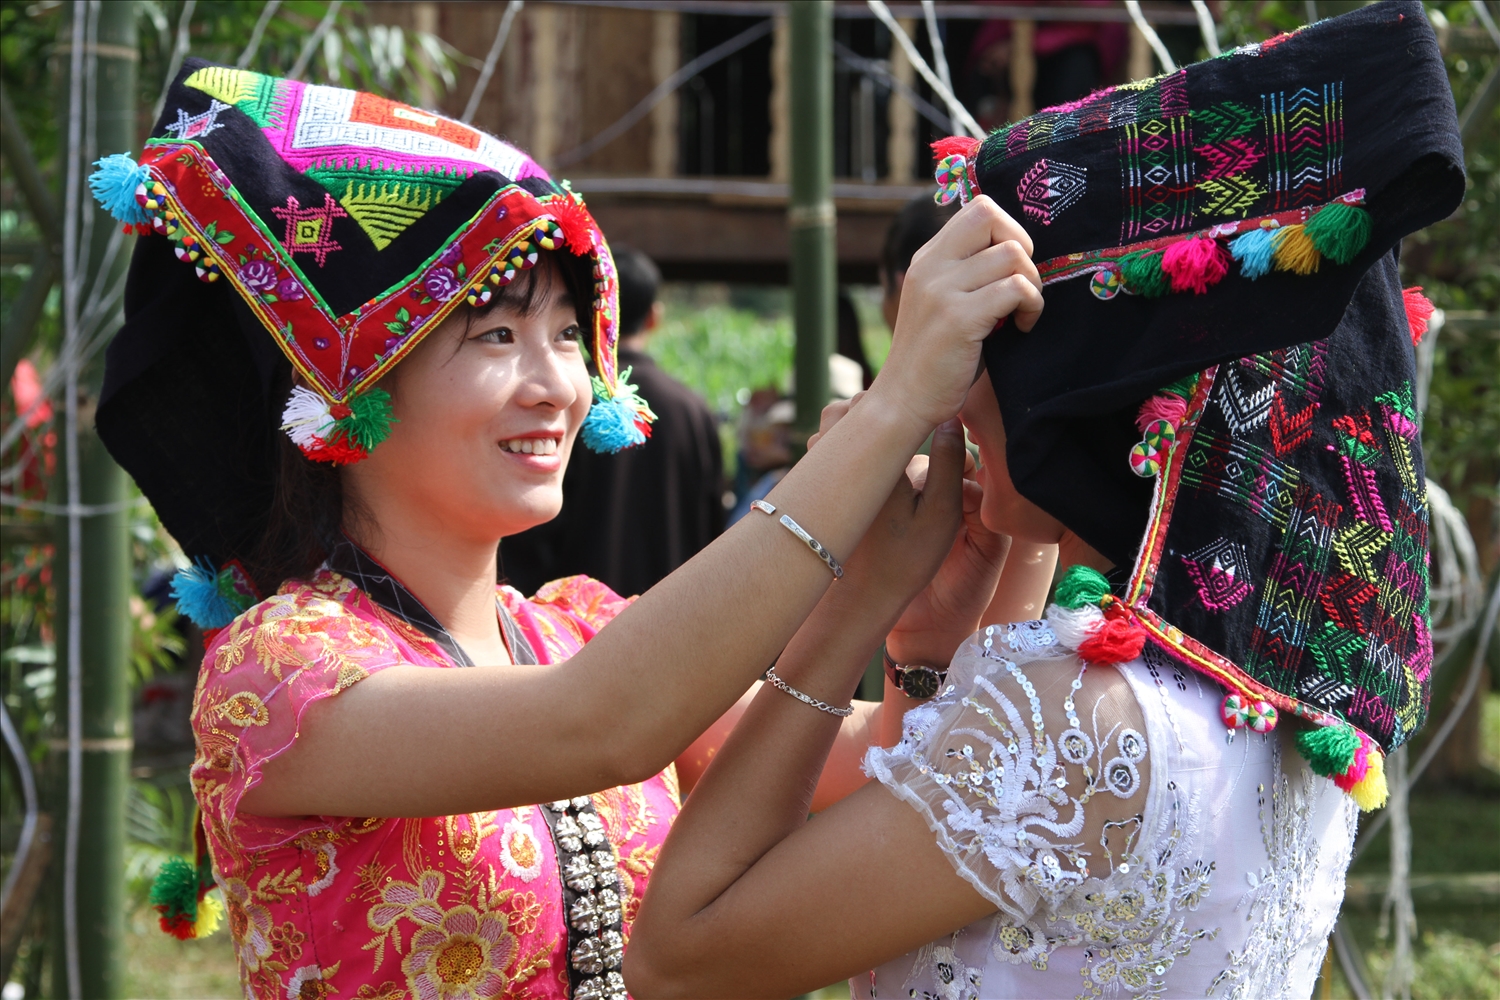 Qua sự cần cù, chịu thương chịu khó và đôi tay khéo léo của phụ nữ Thái đã tạo nên những chiếc khăn piêu tinh hoa mang bản sắc văn hóa dân tộc. 